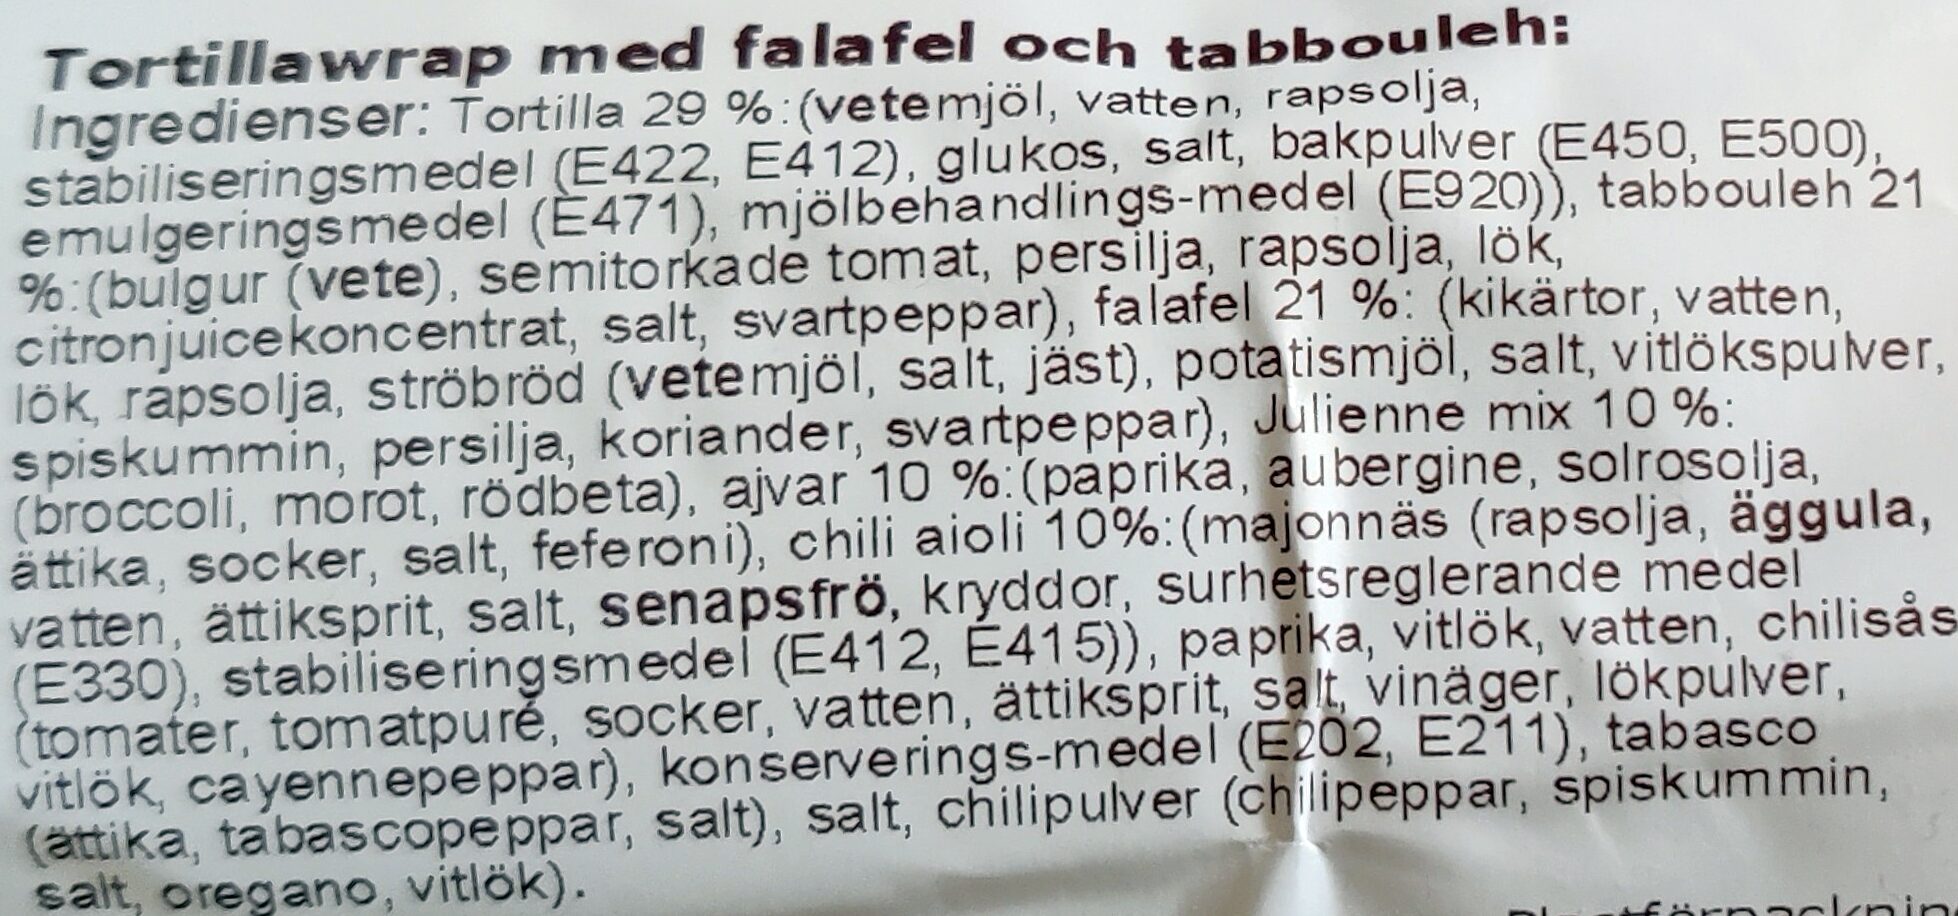 Fresh Falafel Wrap - Ingredients - sv